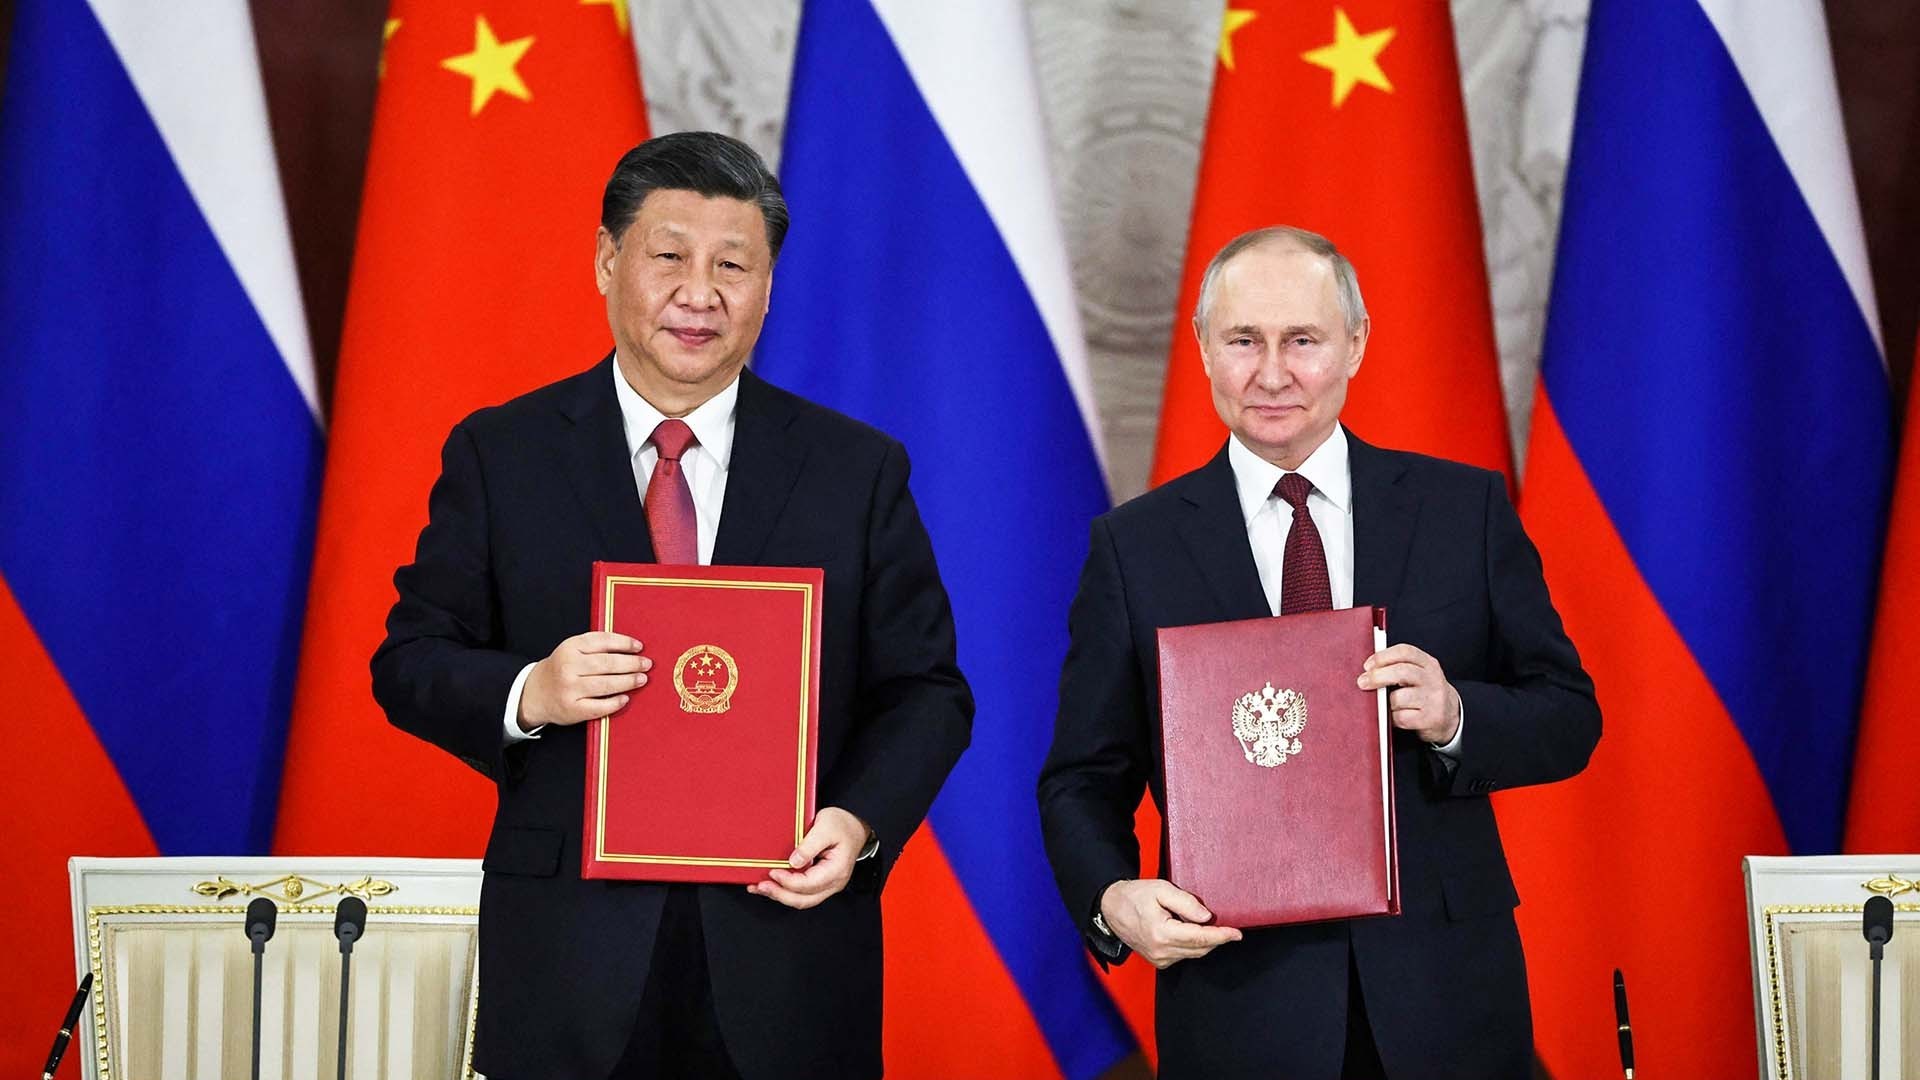 ‘Đốt cháy’ quan hệ với nhiều quốc gia, đây là cách Nga tự tin vượt trừng phạt, Trung Quốc có thành ‘ngư ông đắc lợi’?